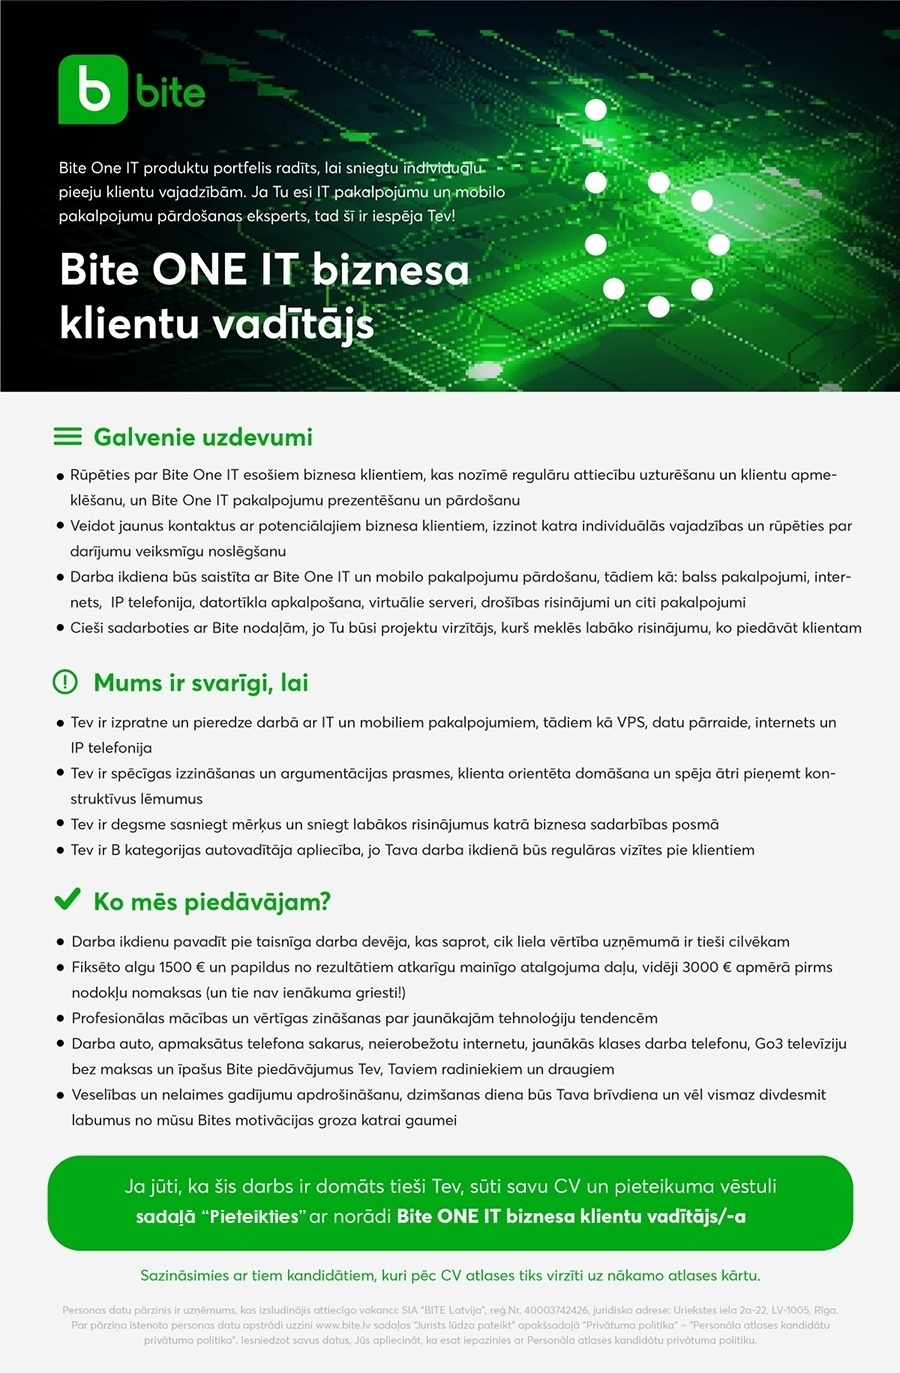 Bite Latvija, SIA BiteONE IT biznesa klientu vadītājs/-a